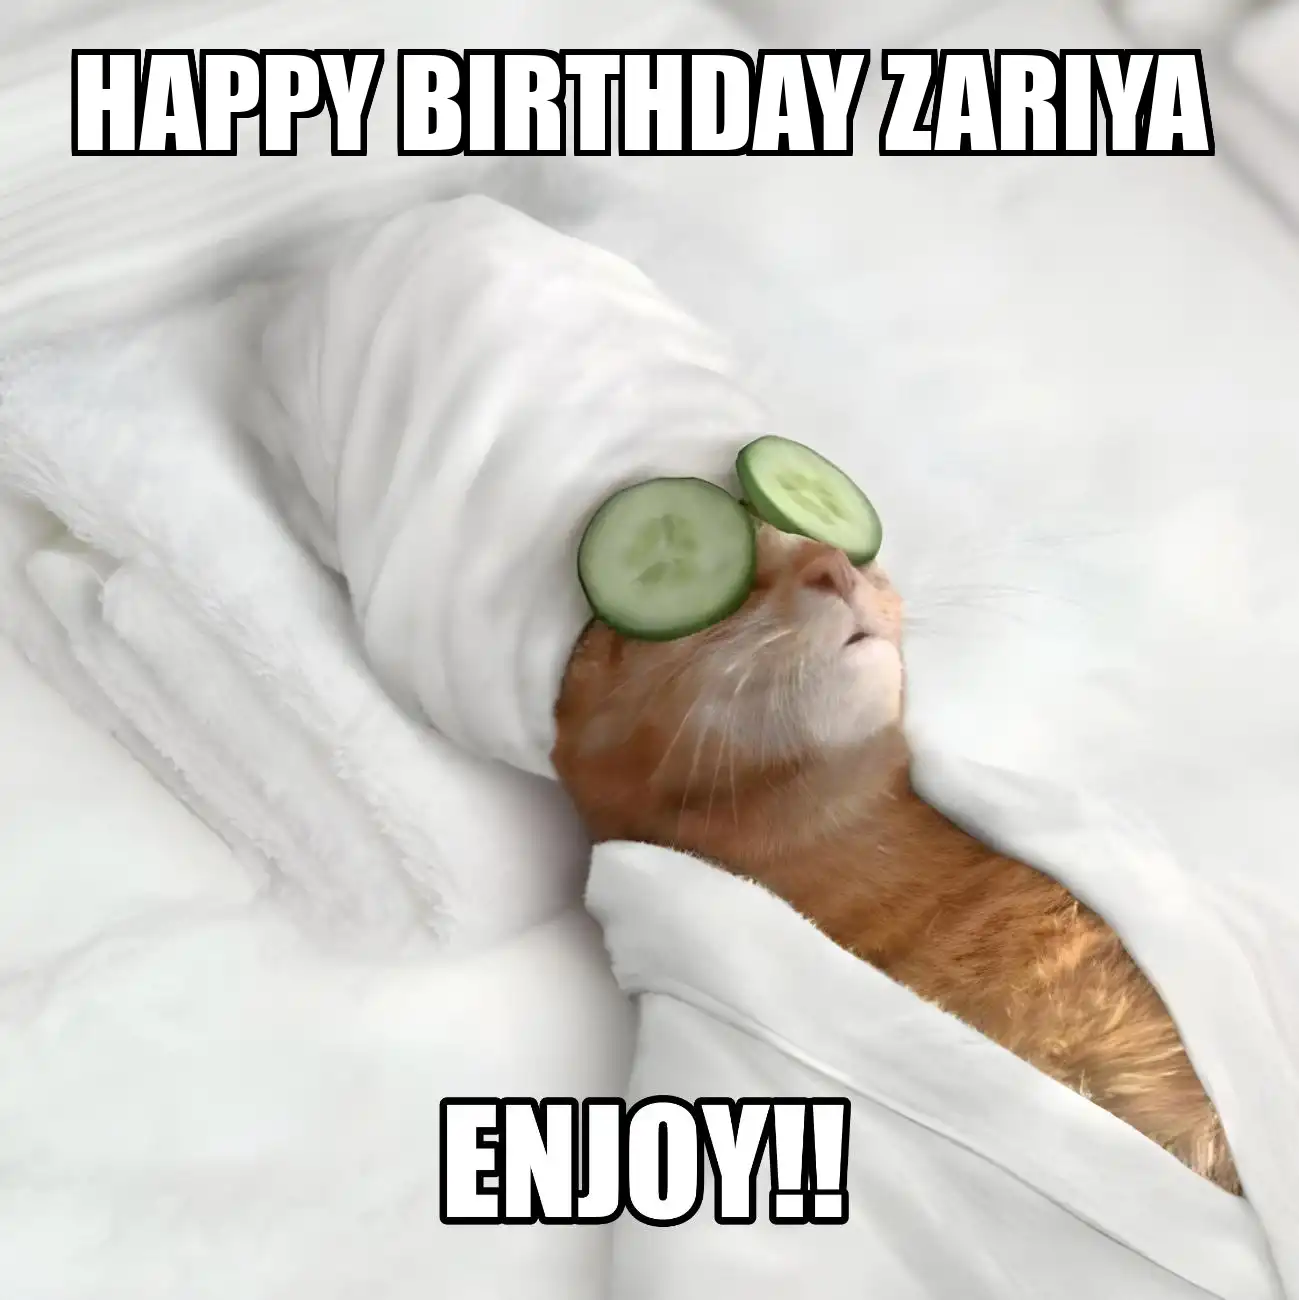 Happy Birthday Zariya Enjoy Cat Meme